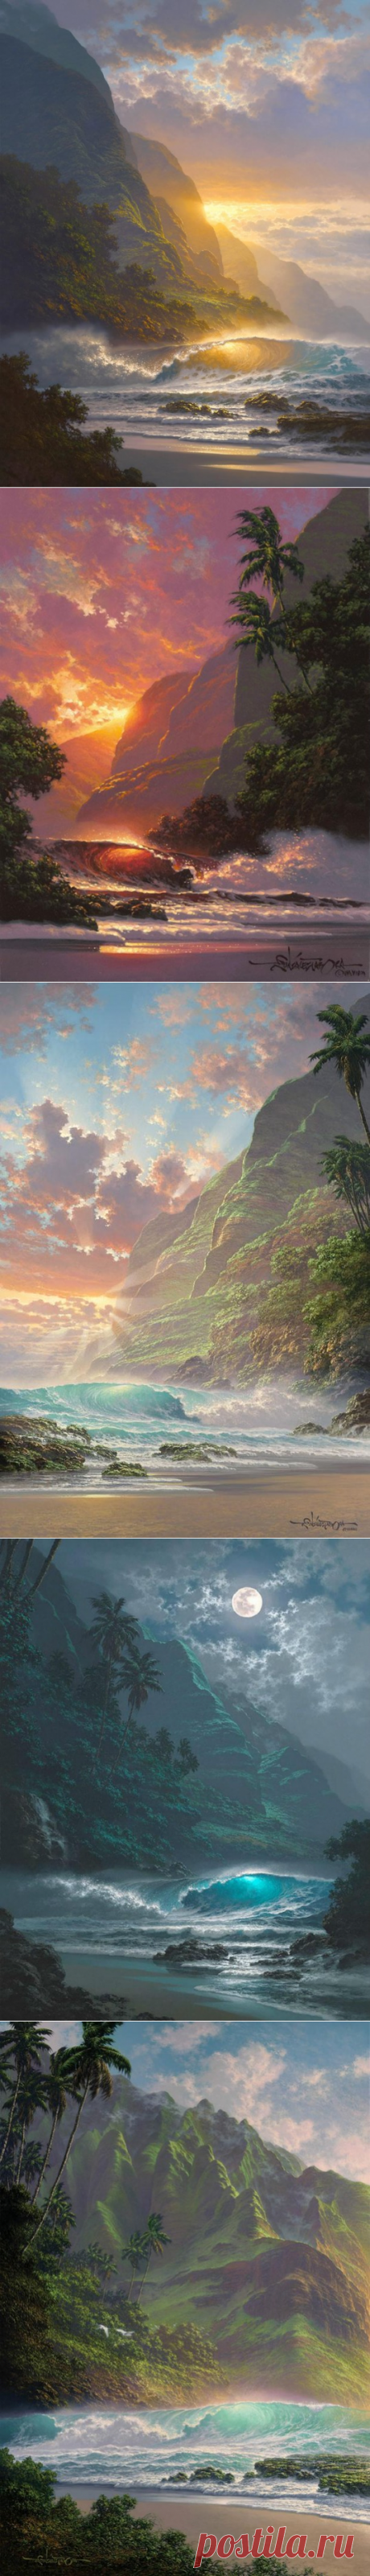 Морские пейзажи гавайского художника Roy Tabora.